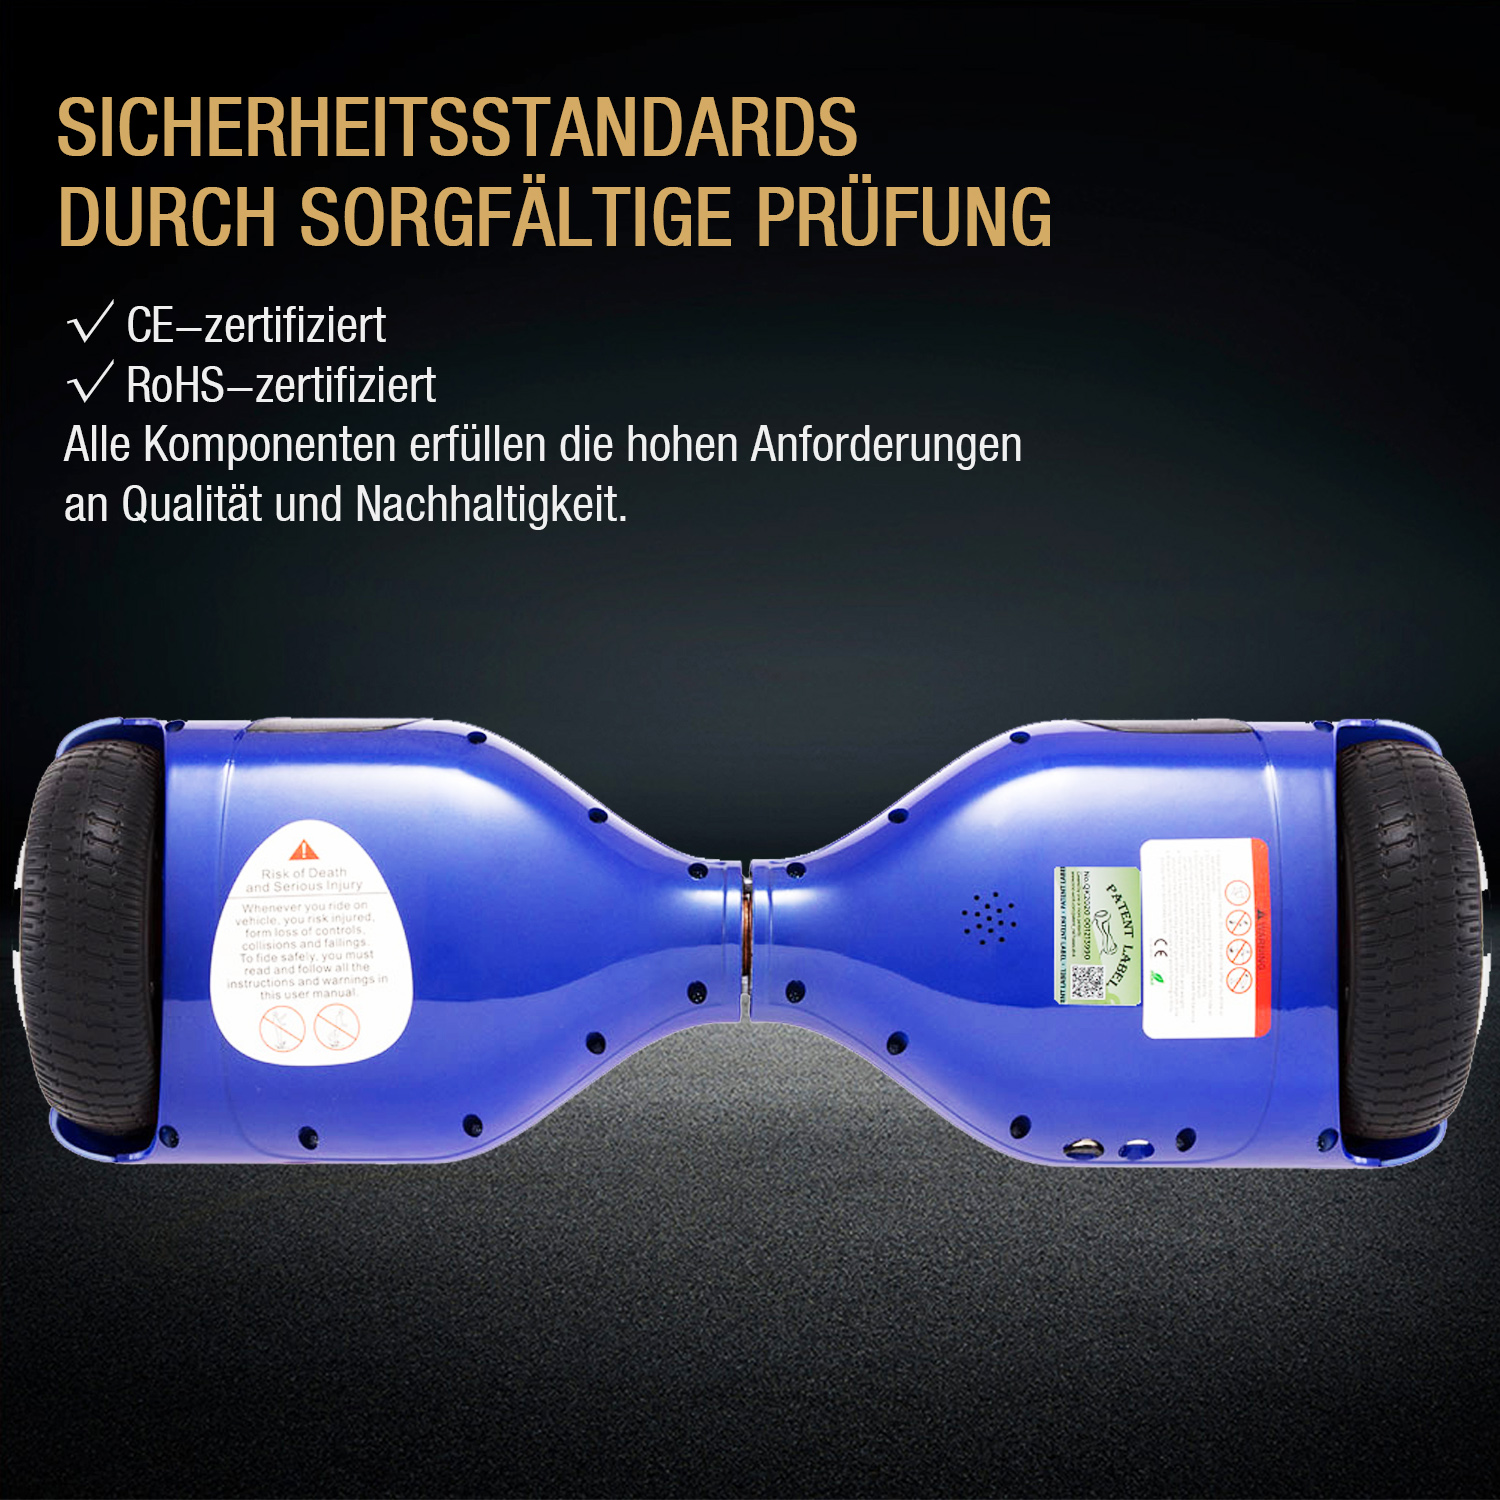 Neues 6,5" Hoverboard blau mit Bluetooth Musik Lautsprecher und LED Licht - 500W 12km/h-Hoverboarde